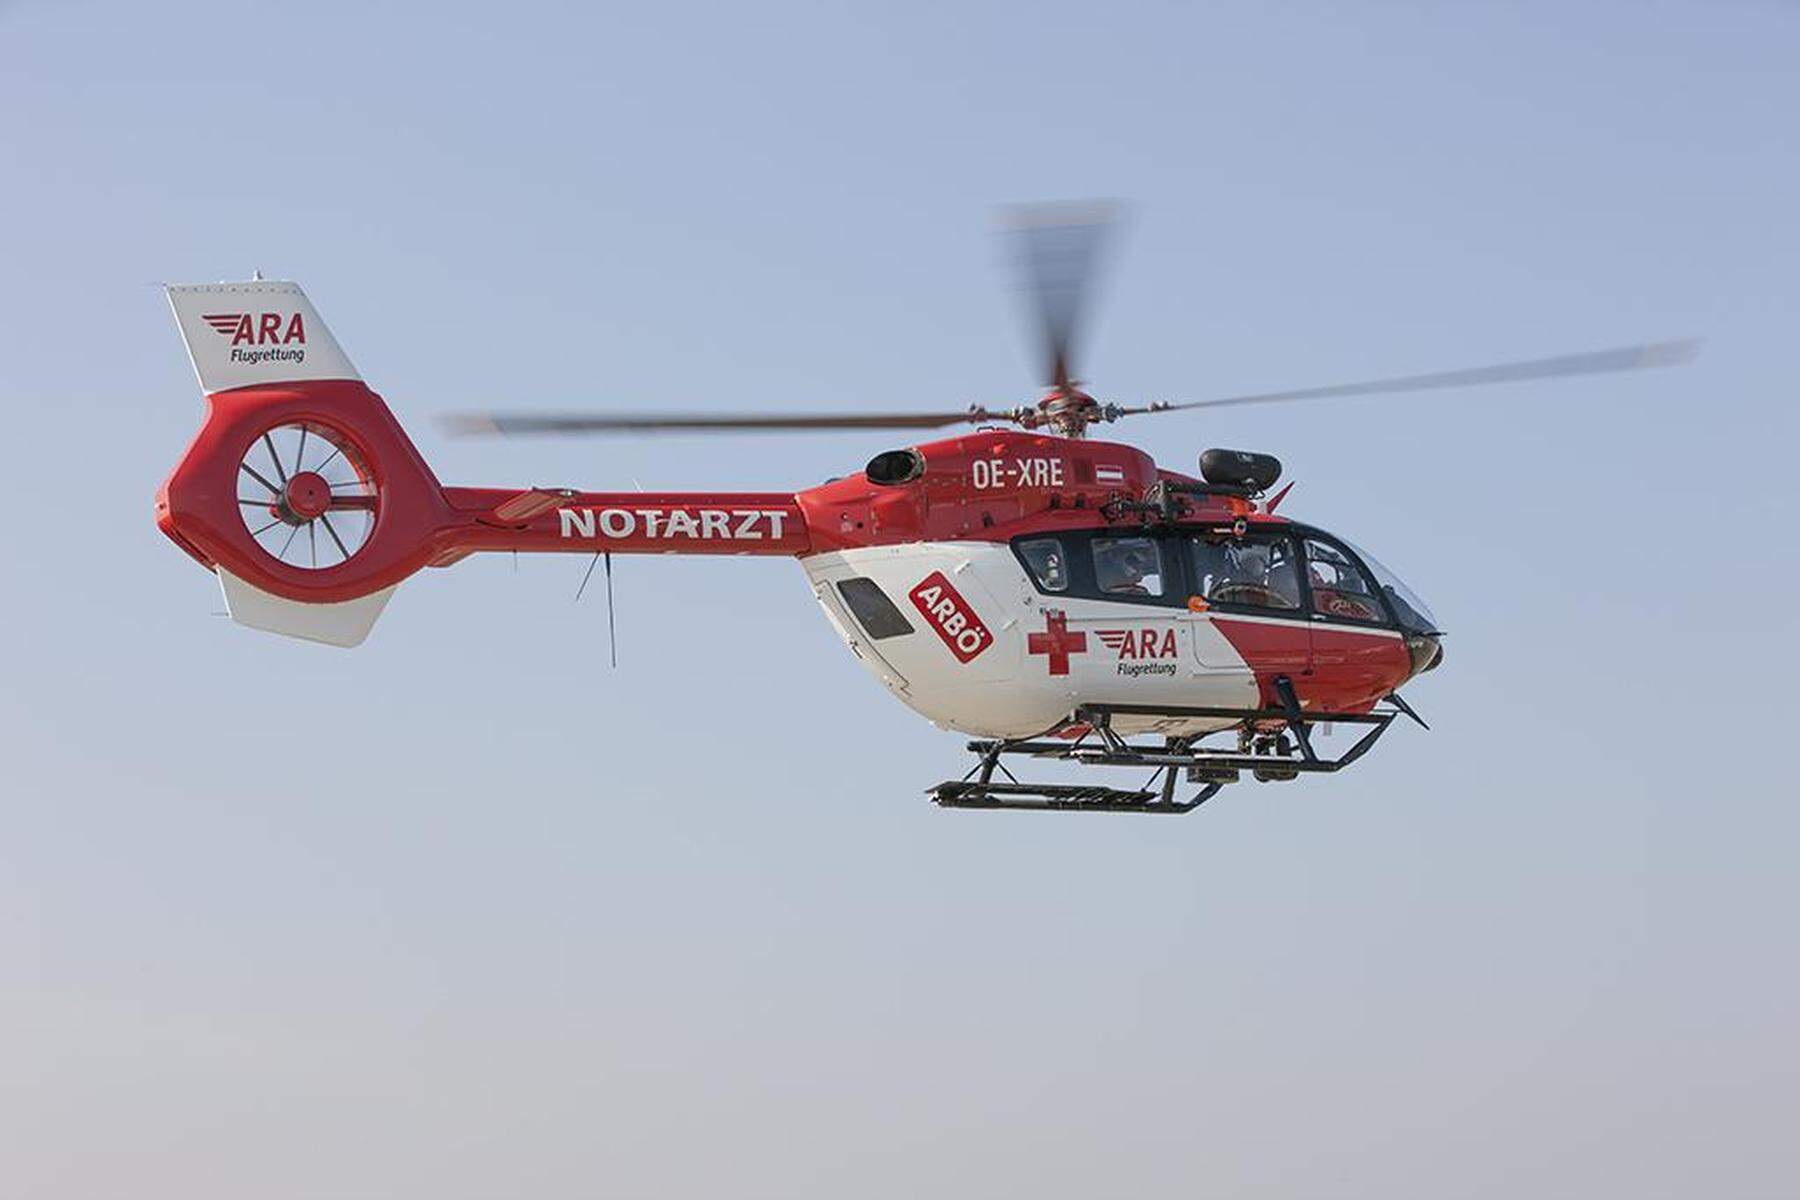 Hubschrauber im Einsatz: Motorradfahrer in Kärnten bei Crash meterweit über Auto geschleudert